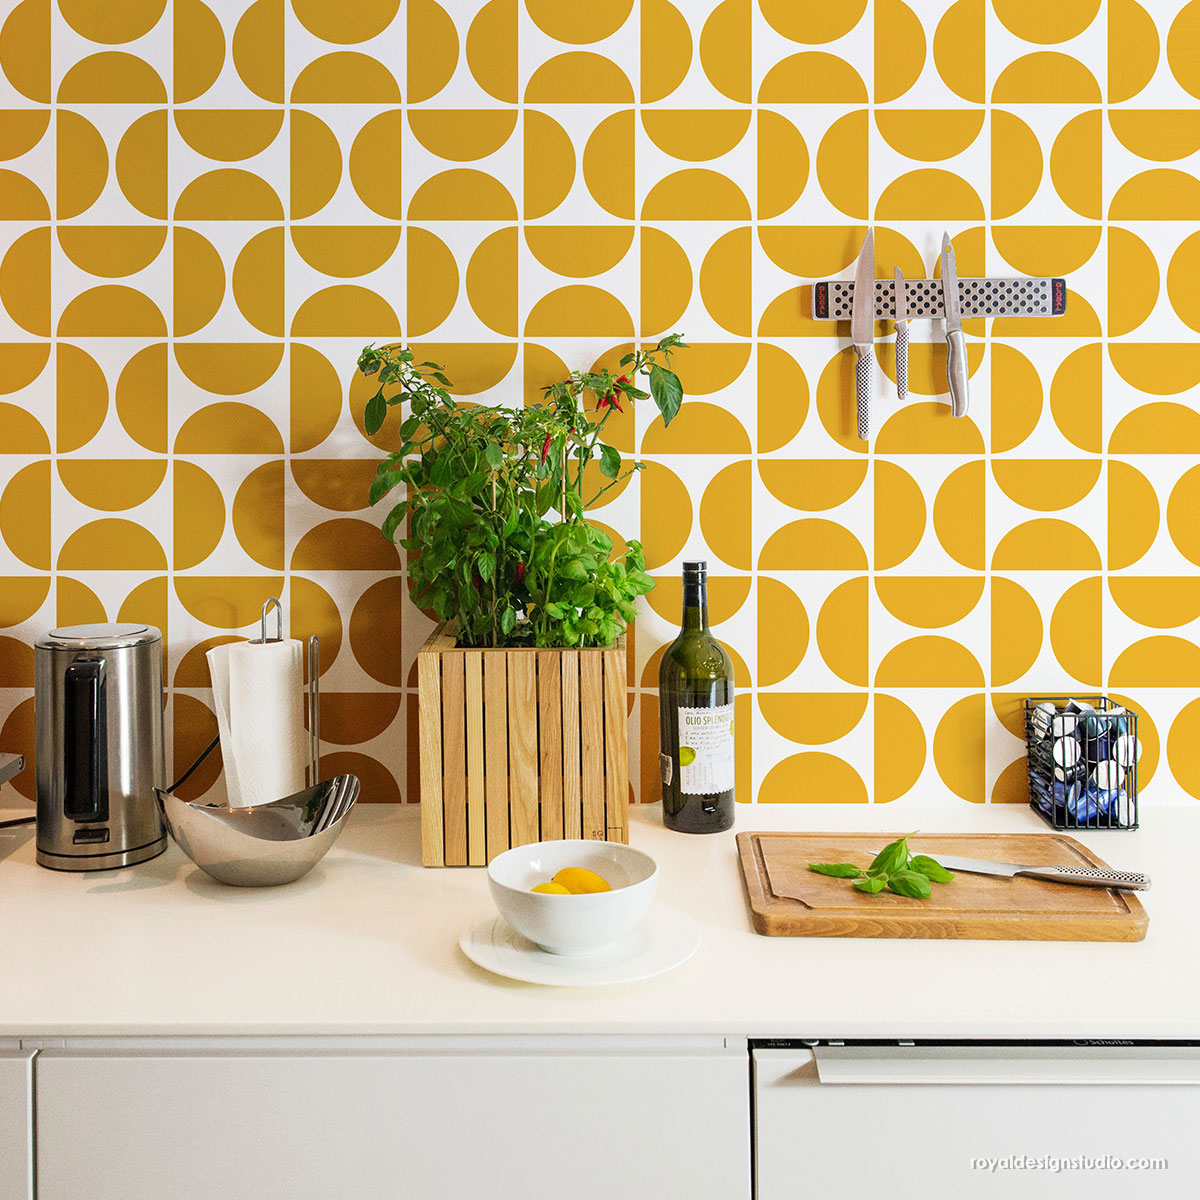 Stencil kitchen walls with wall stencils-Modern pattern